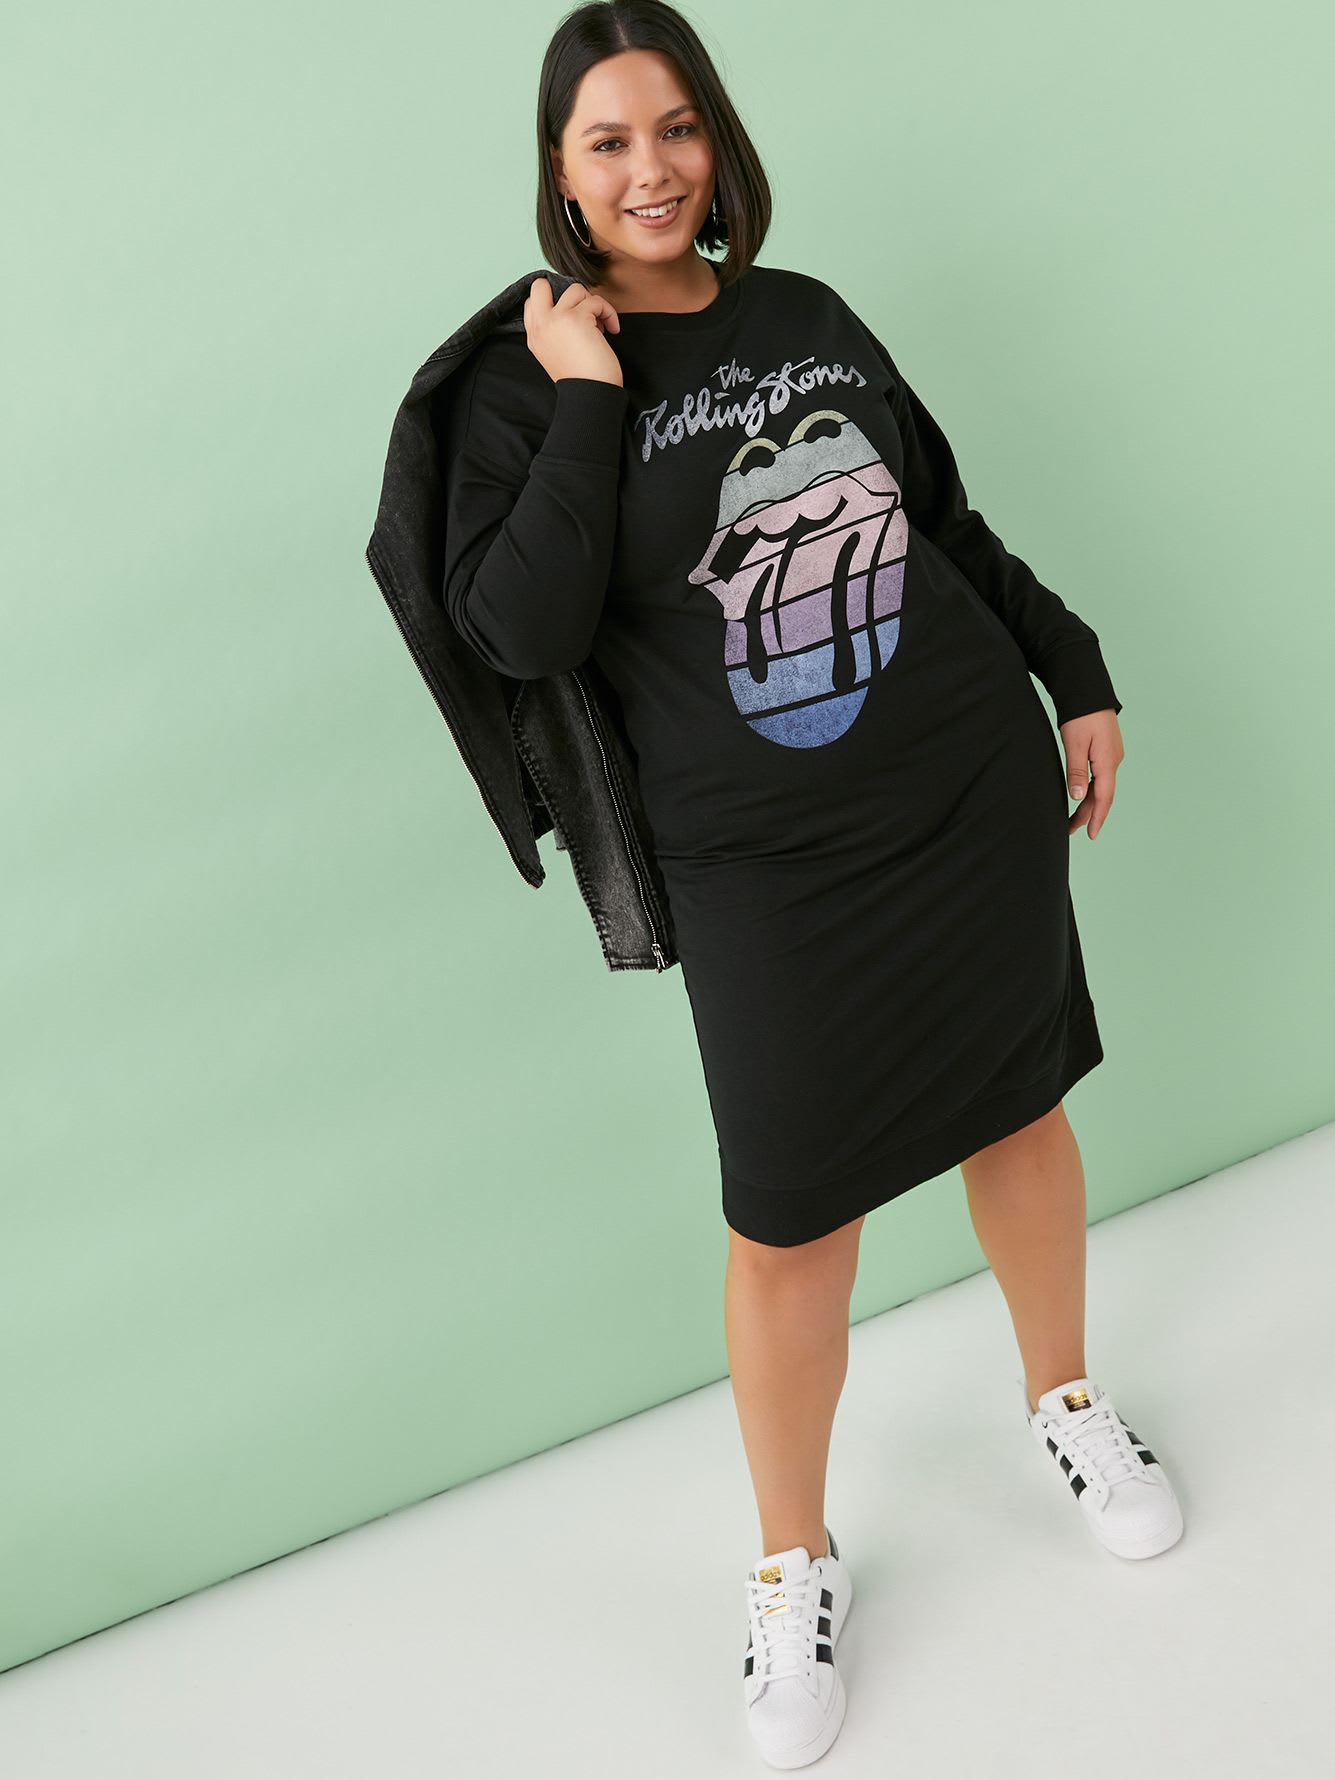 Sweatshirt Dress with Crew Neckline - Addition Elle